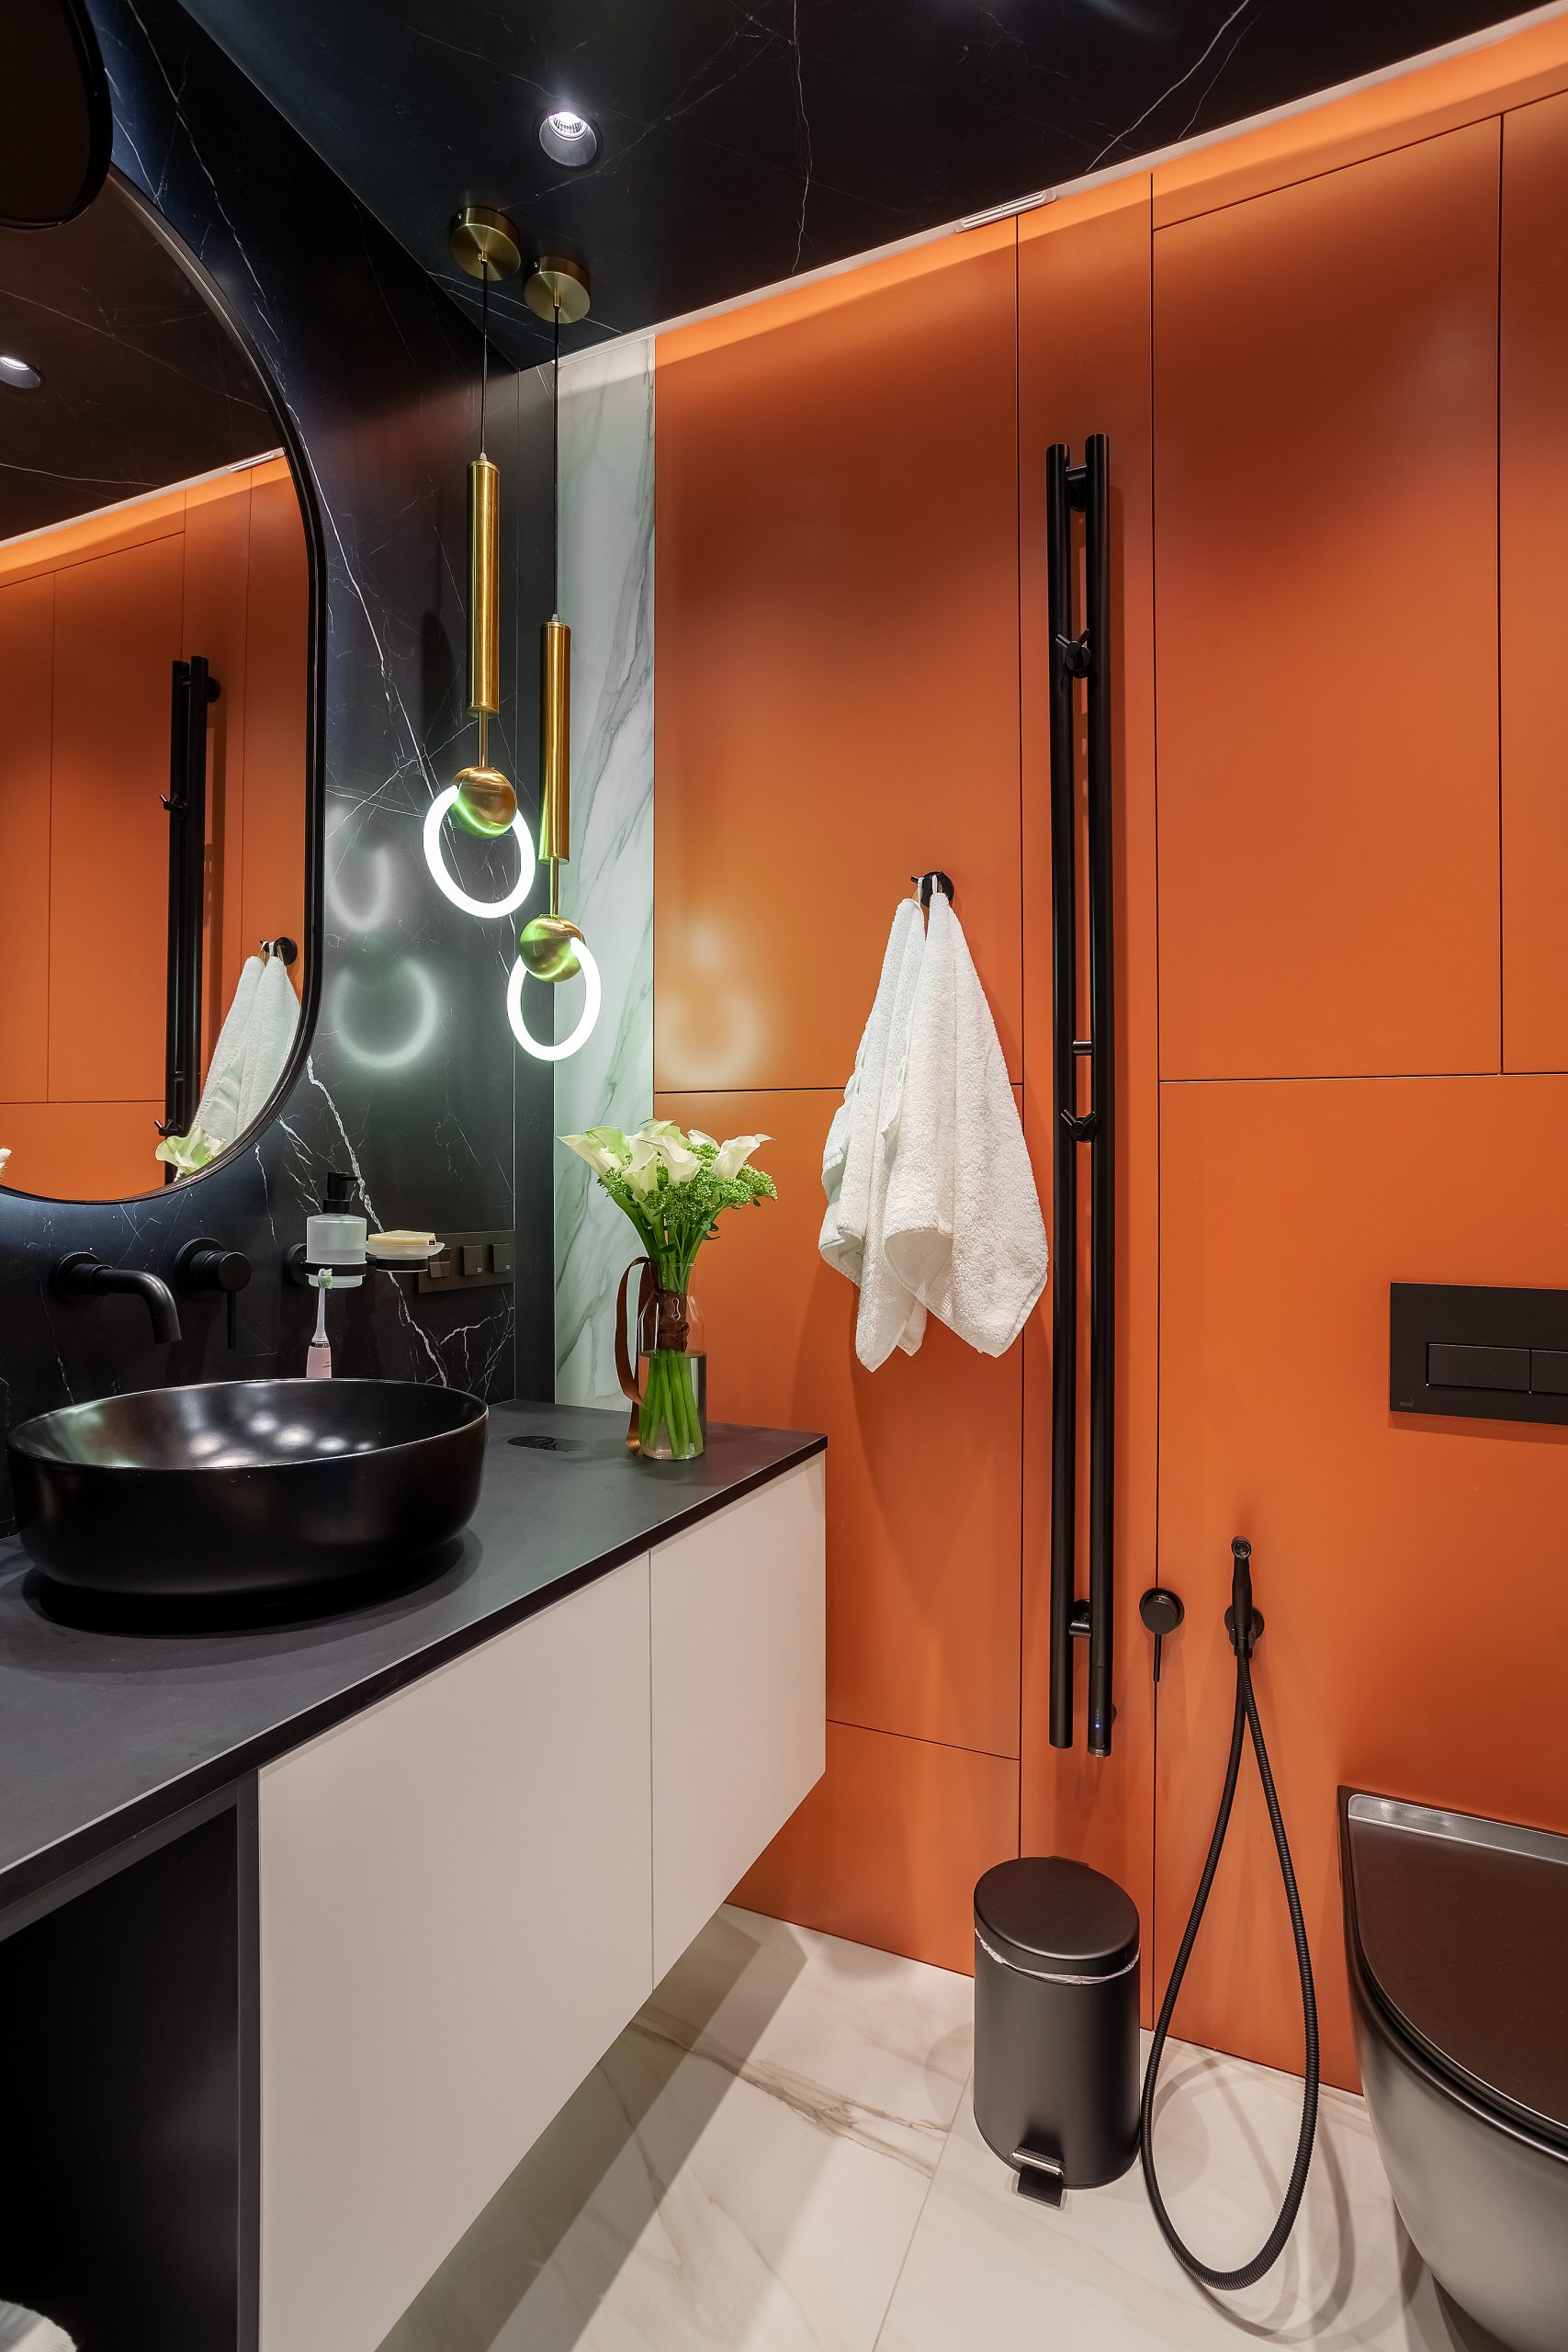 Яркое решение дизайн интерьера для ванной комнаты